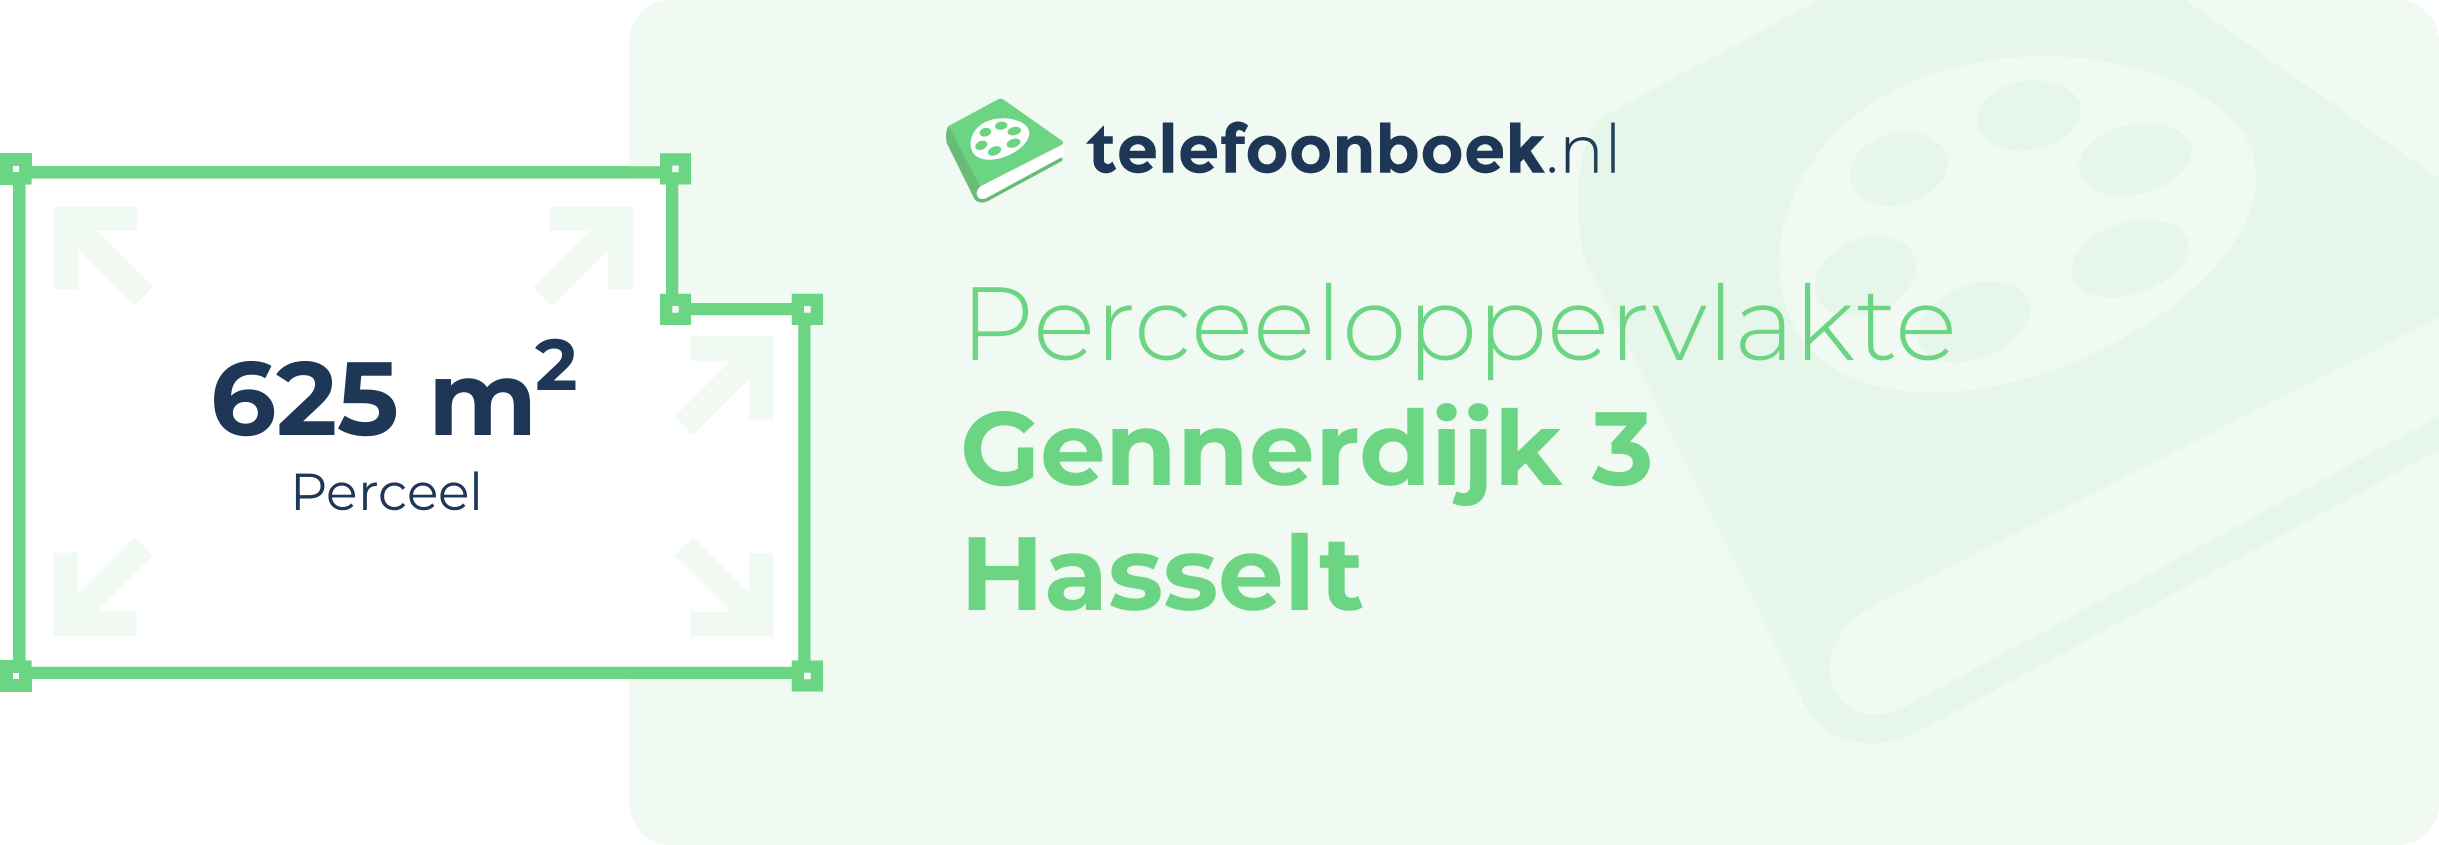 Perceeloppervlakte Gennerdijk 3 Hasselt